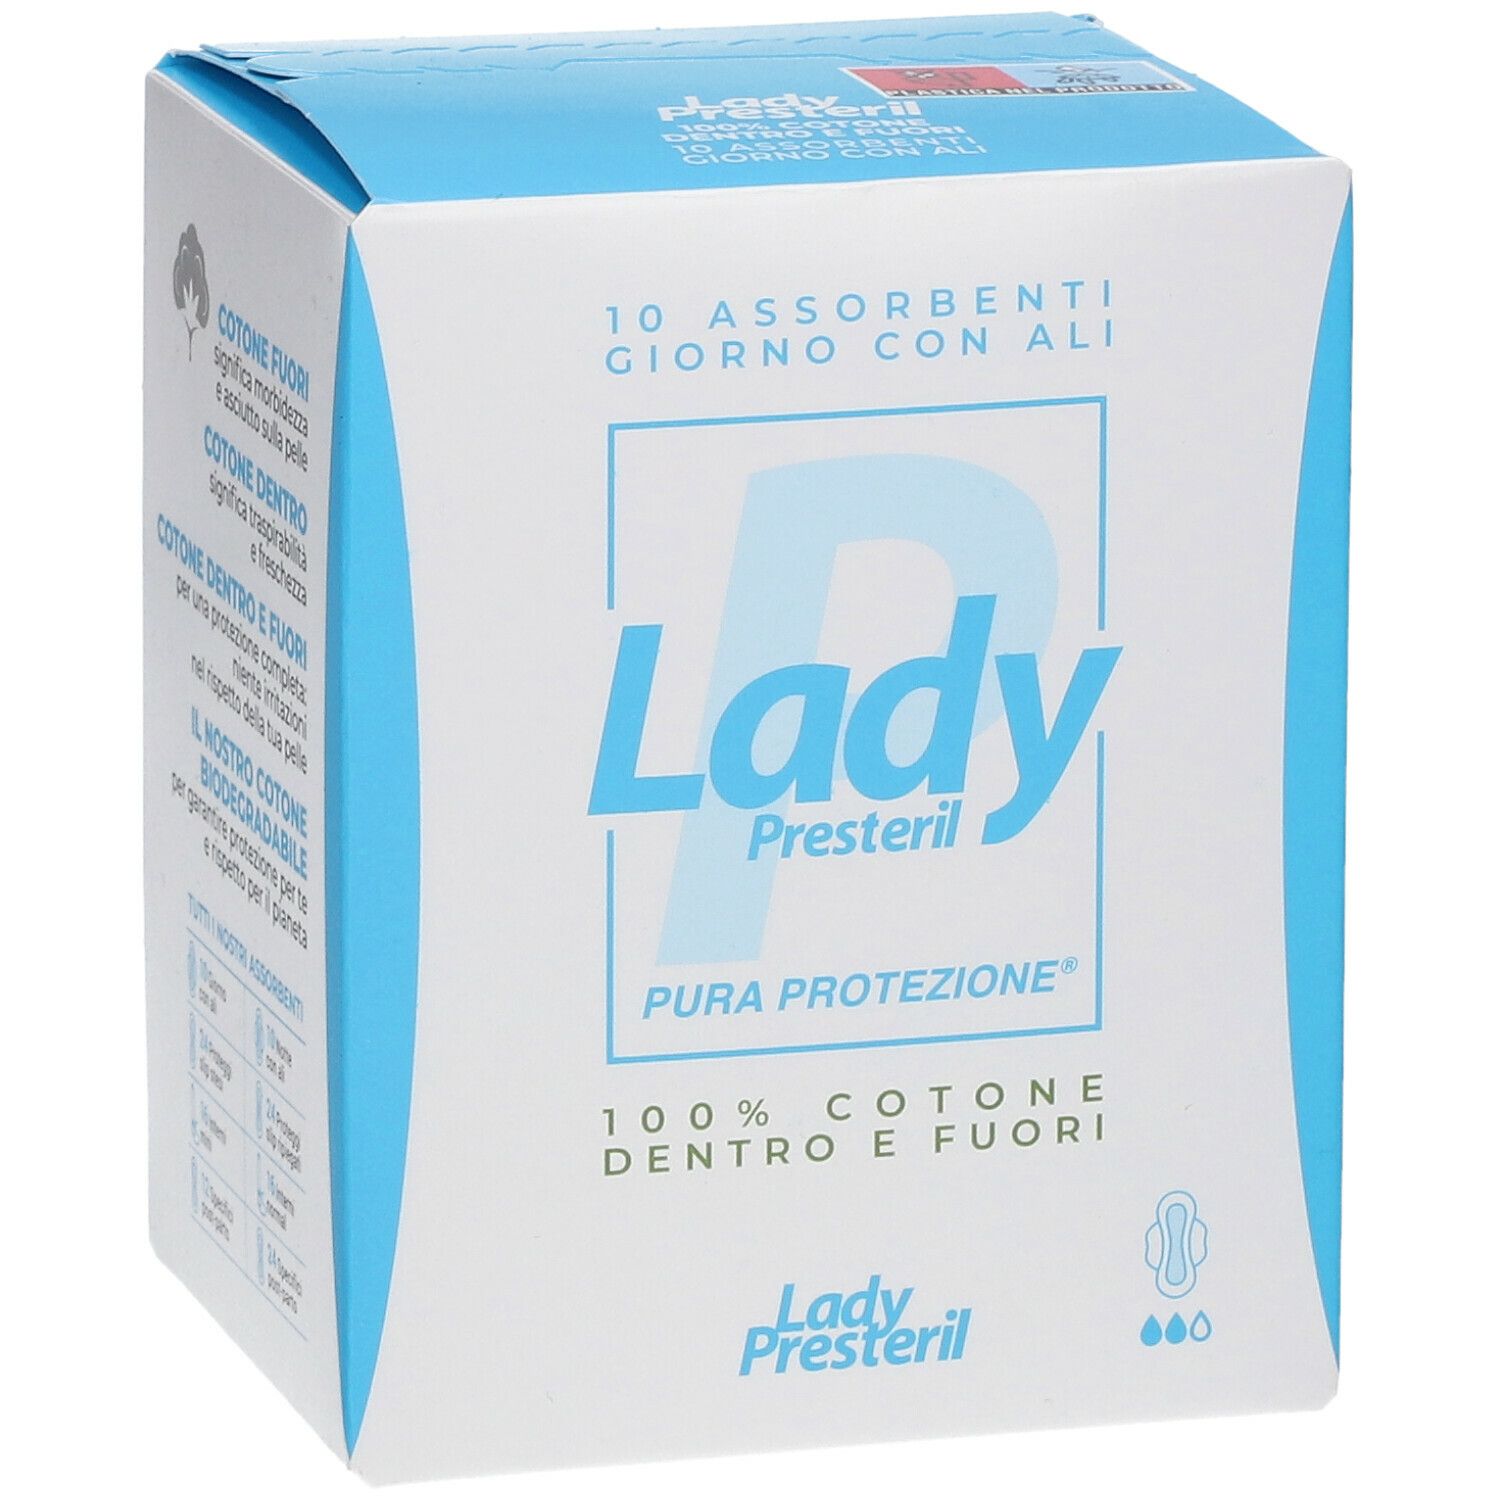 Lady Presteril Pura Protezione® Giorno Ali